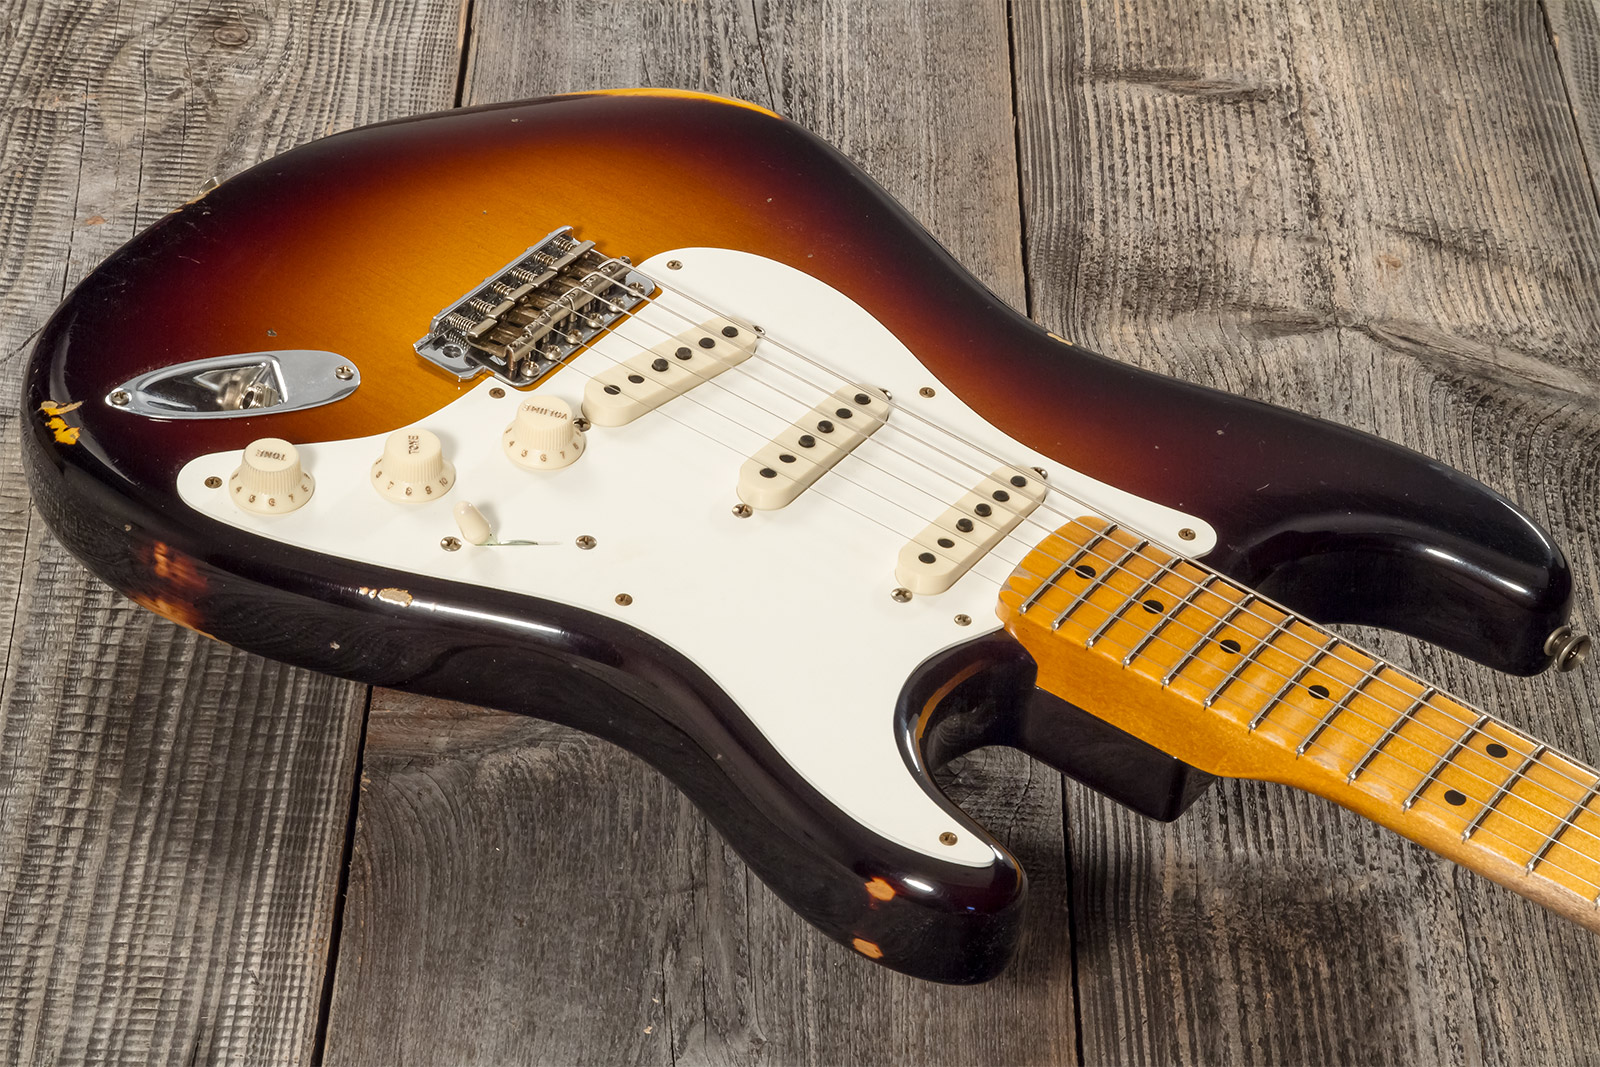 Fender Custom Shop Strat 1957 3s Trem Mn #cz571791 - Relic Wide Fade 2-color Sunburst - E-Gitarre in Str-Form - Variation 2